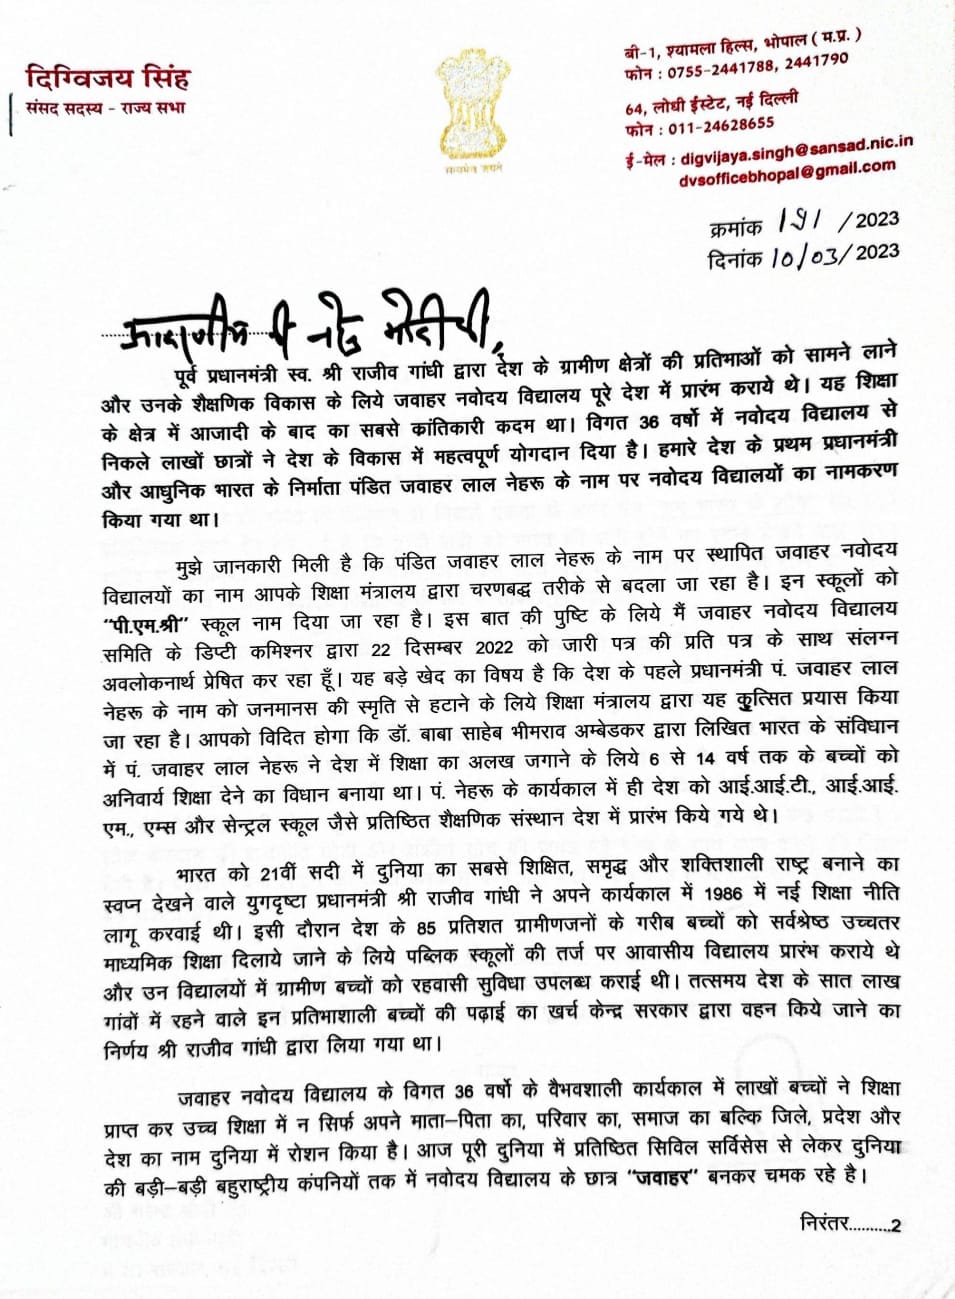 दिग्विजय सिंह ने पीएम नरेंद्र मोदी को लिखा पत्र, जवाहर नवोदय विद्यालय को लेकर की ये मांग